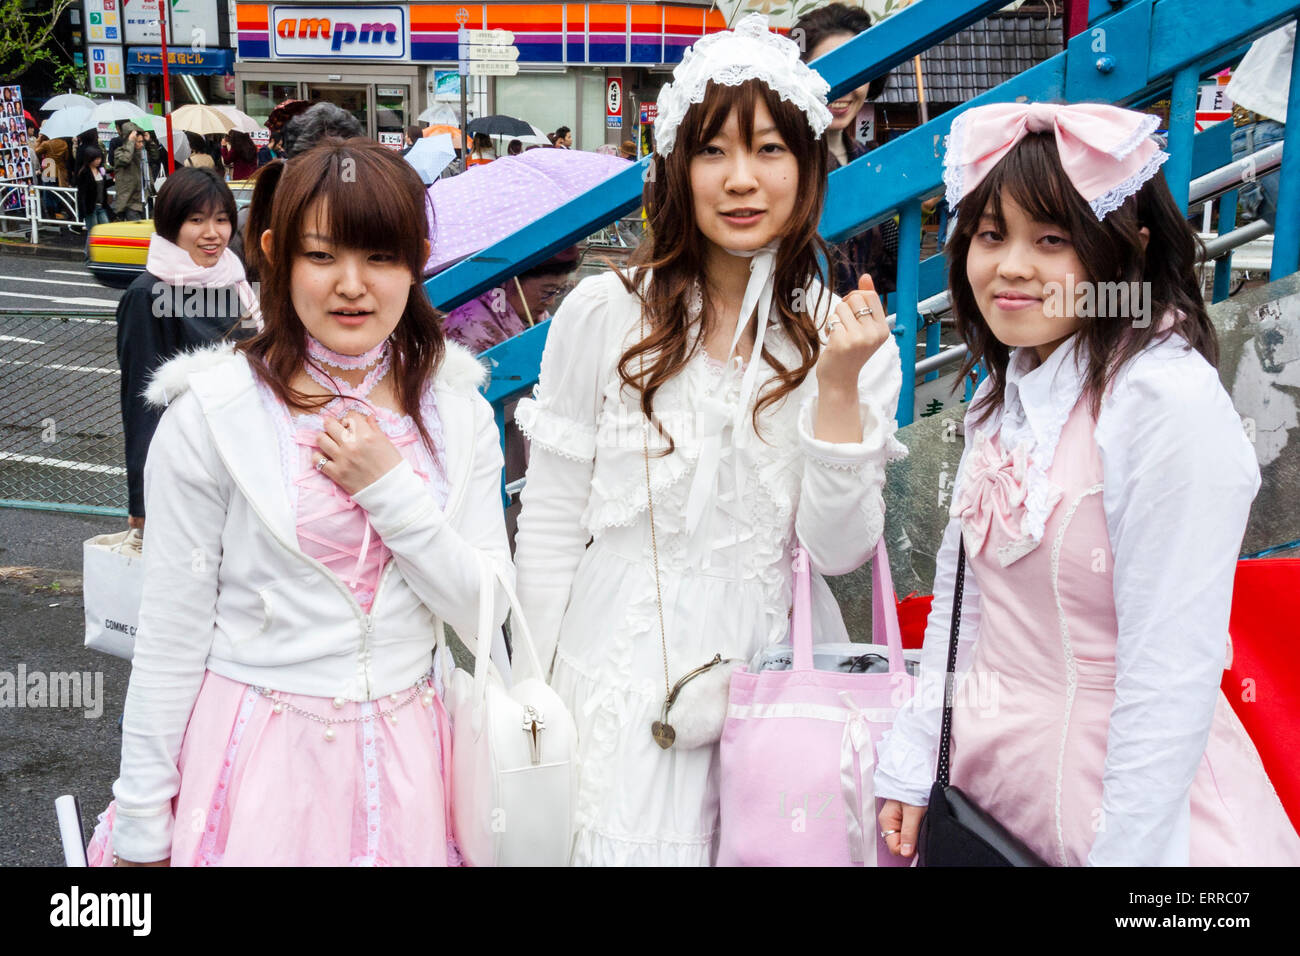 Drei junge japanische Frauen kleideten sich in "Sweet Lolita" Classic Lolita Stil pinkfarbene Maid Kostüme, beeinflusst von Victoria-Kleidung. Blickkontakt, Augenkontakt. Stockfoto